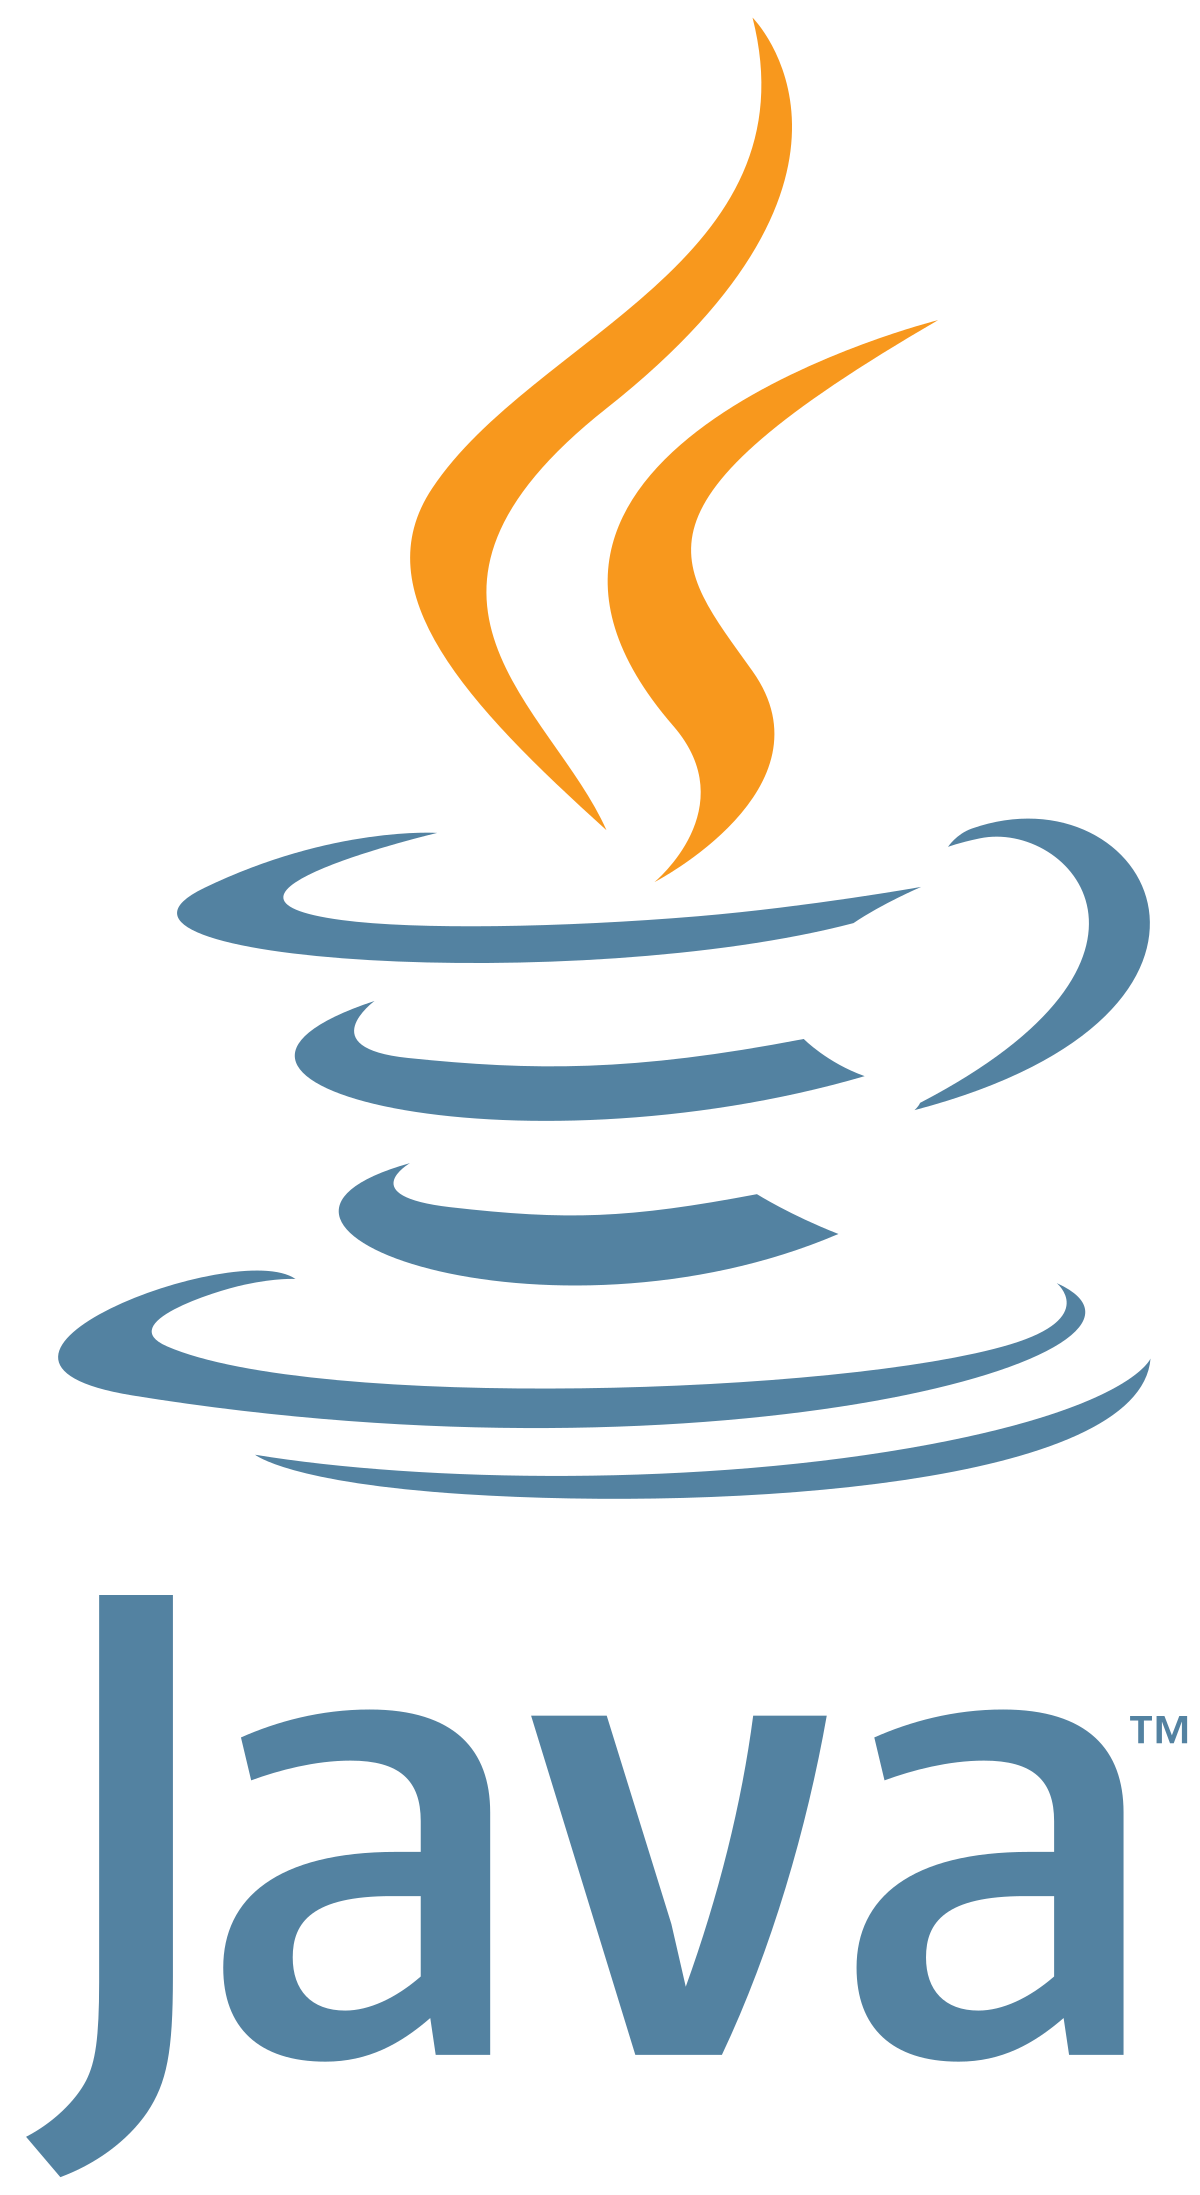 Java Programming Language Logo